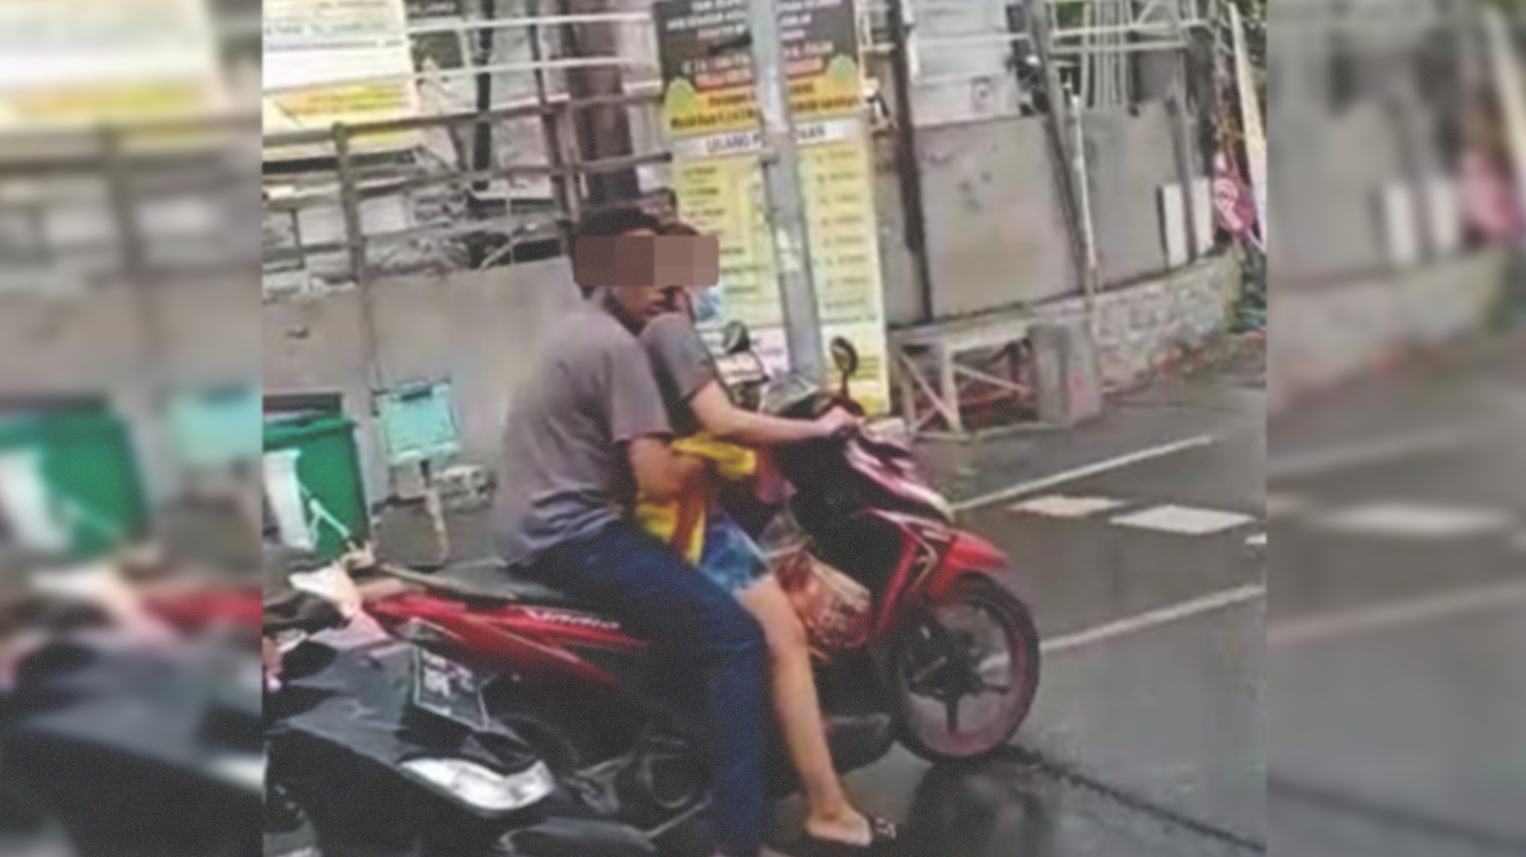 Nekat mesum di atas motor, si pria tak kuat menahan syahwat hingga nekat menggerayangi dan mencium wanita yang memboncengnya. (Foto: Istimewa)